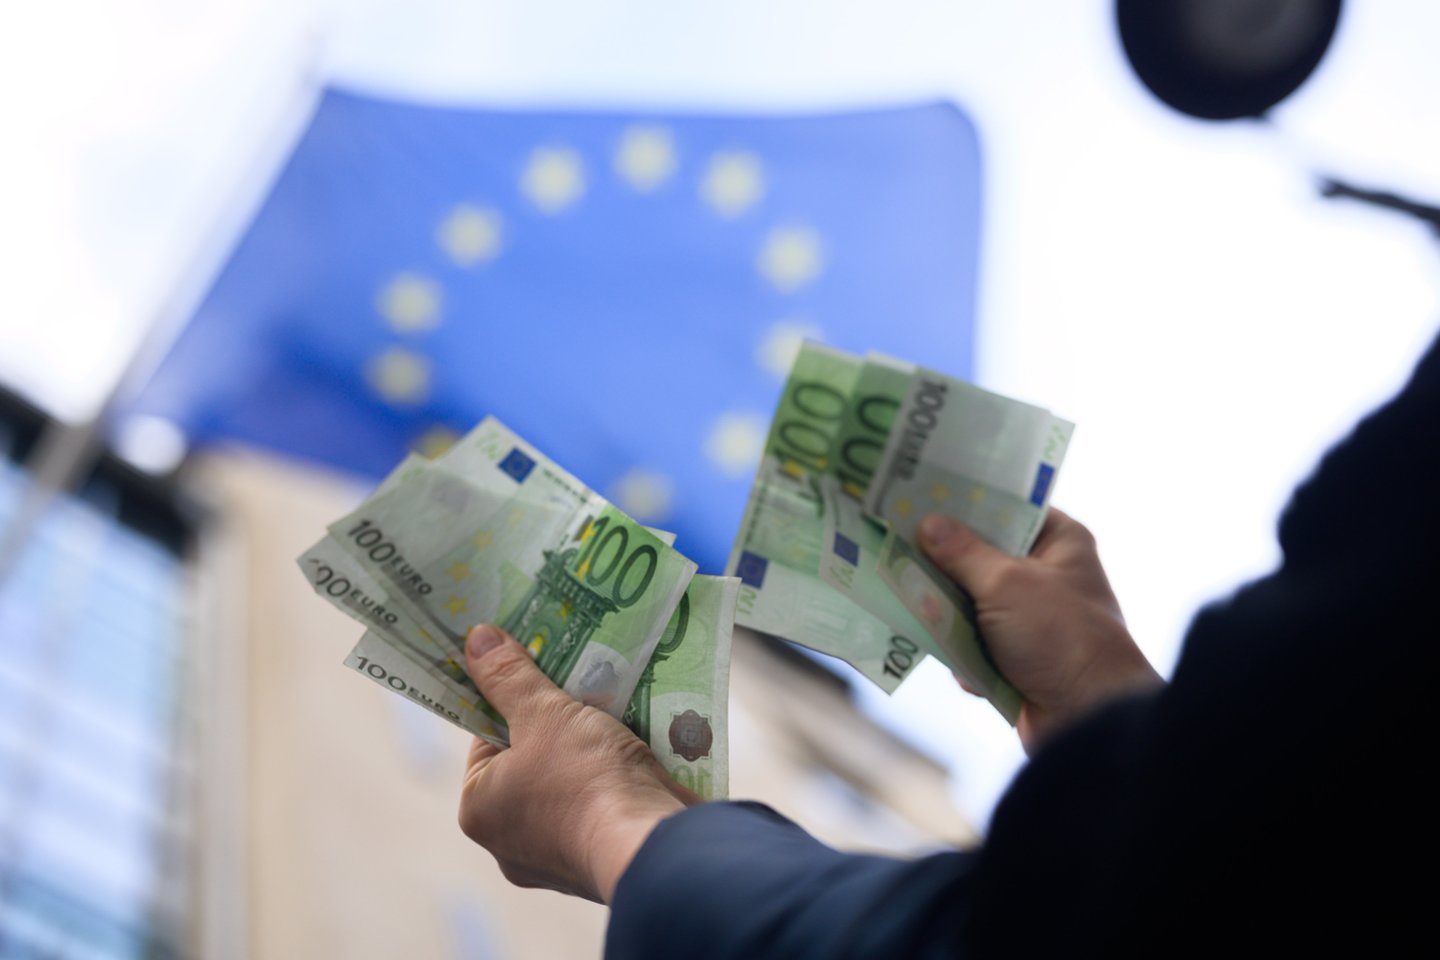 Šiandien euras yra oficiali mokėjimo priemonė, kuria naudojasi daugiau kaip 346 mln. žmonių 20-yje ES šalių.<br>V.Skaraičio nuotr.